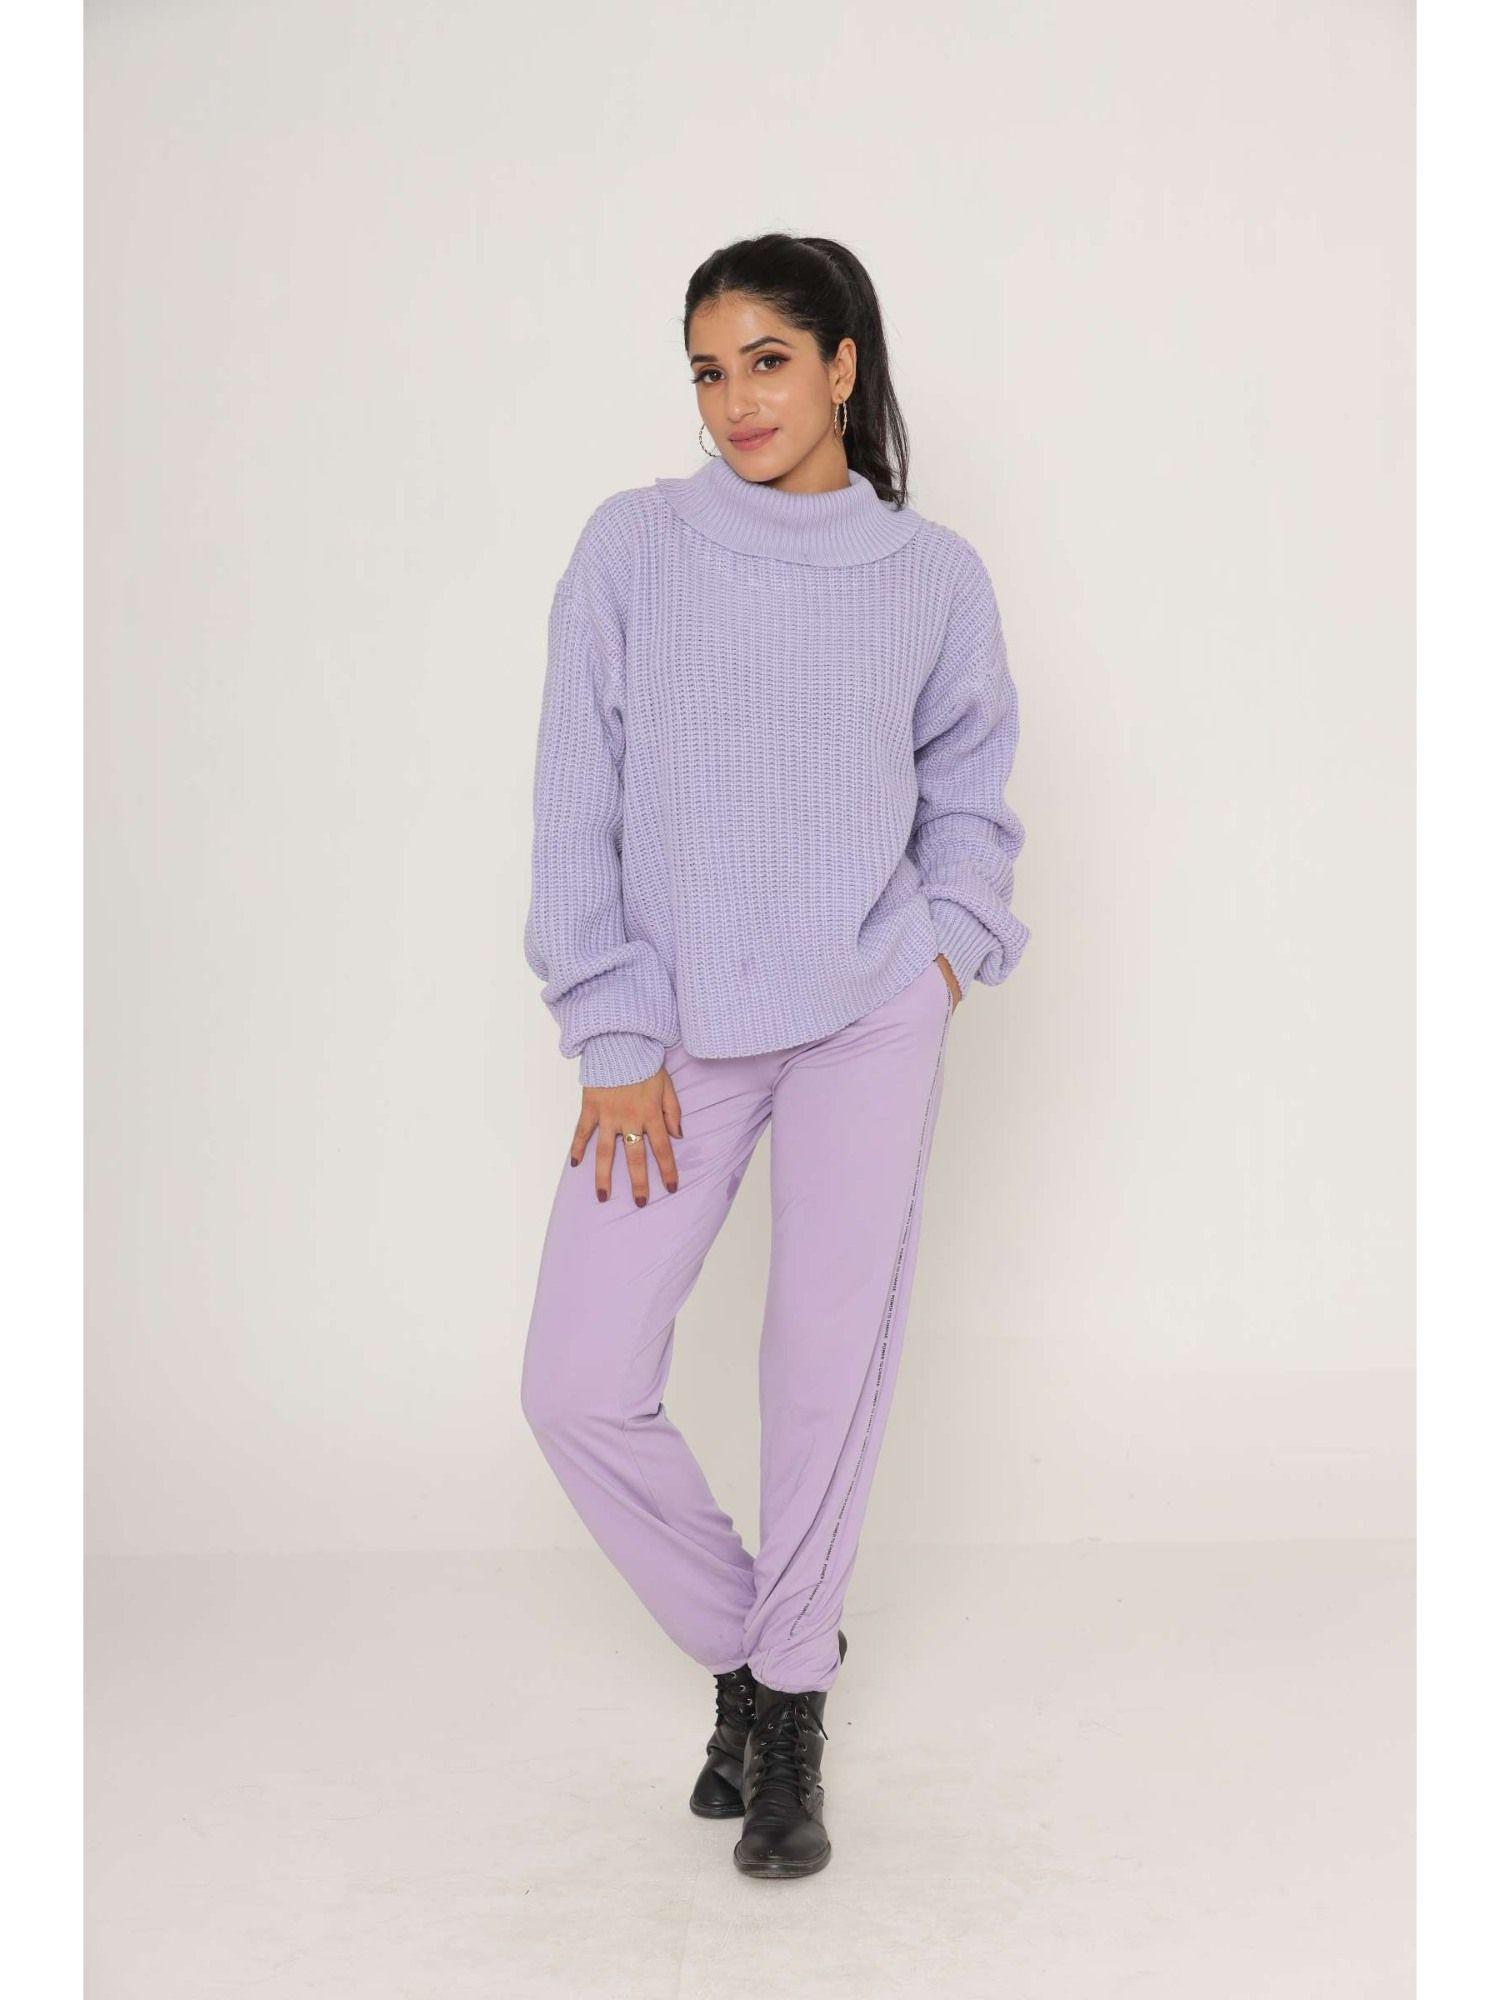 stylish oversized drop shoulders purple woollen sweaters for women